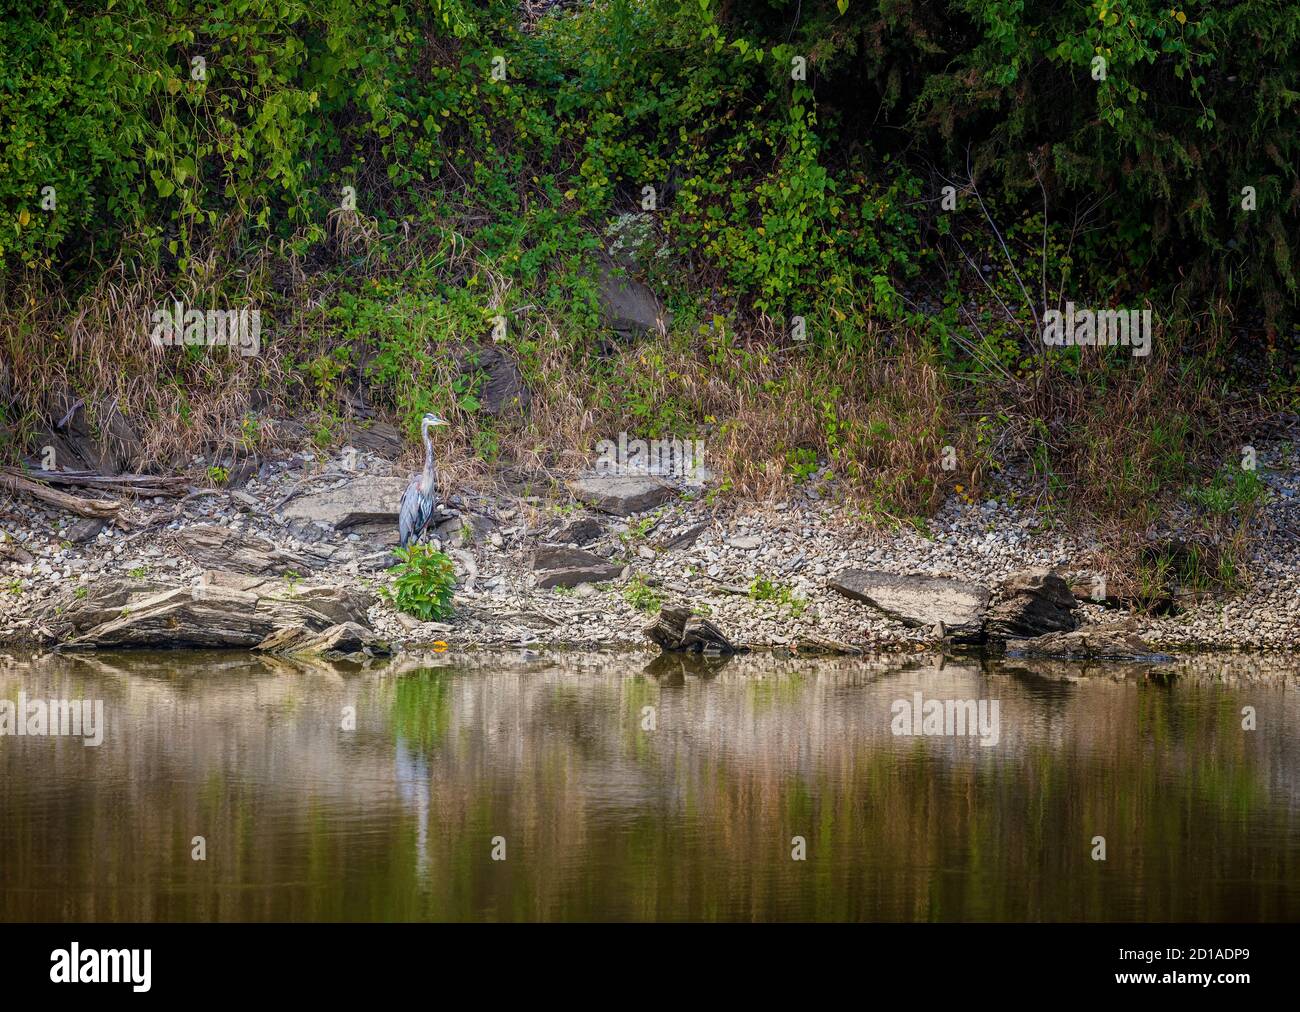 Ein großartiger Blaureiher steht am Ufer, der sich in die natürliche Umgebung einfügt. Stockfoto